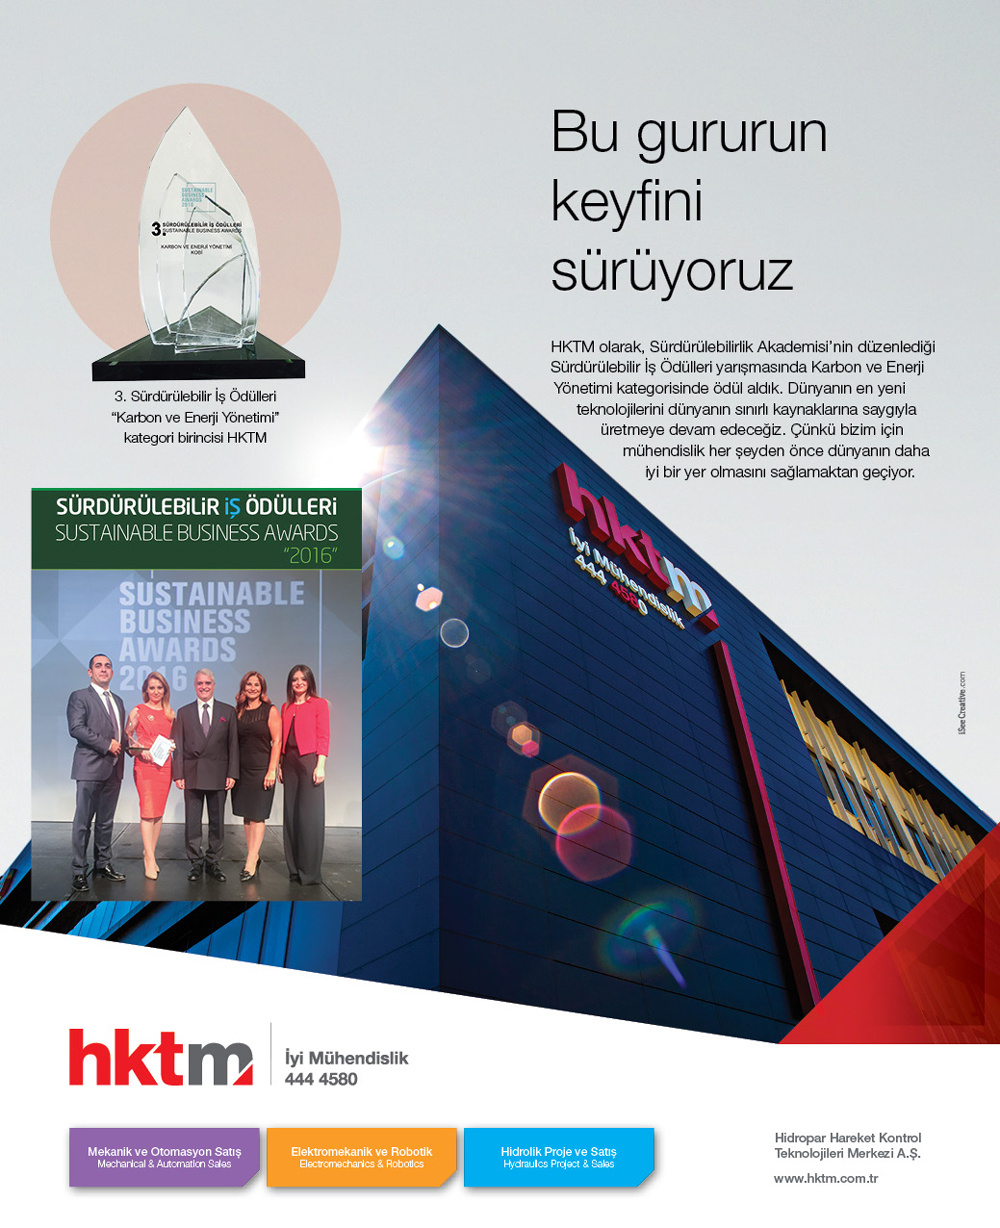 3. Sürdürülebilir İş Ödülleri “Karbon ve Enerji Yönetimi” kategori birincisi HKTM